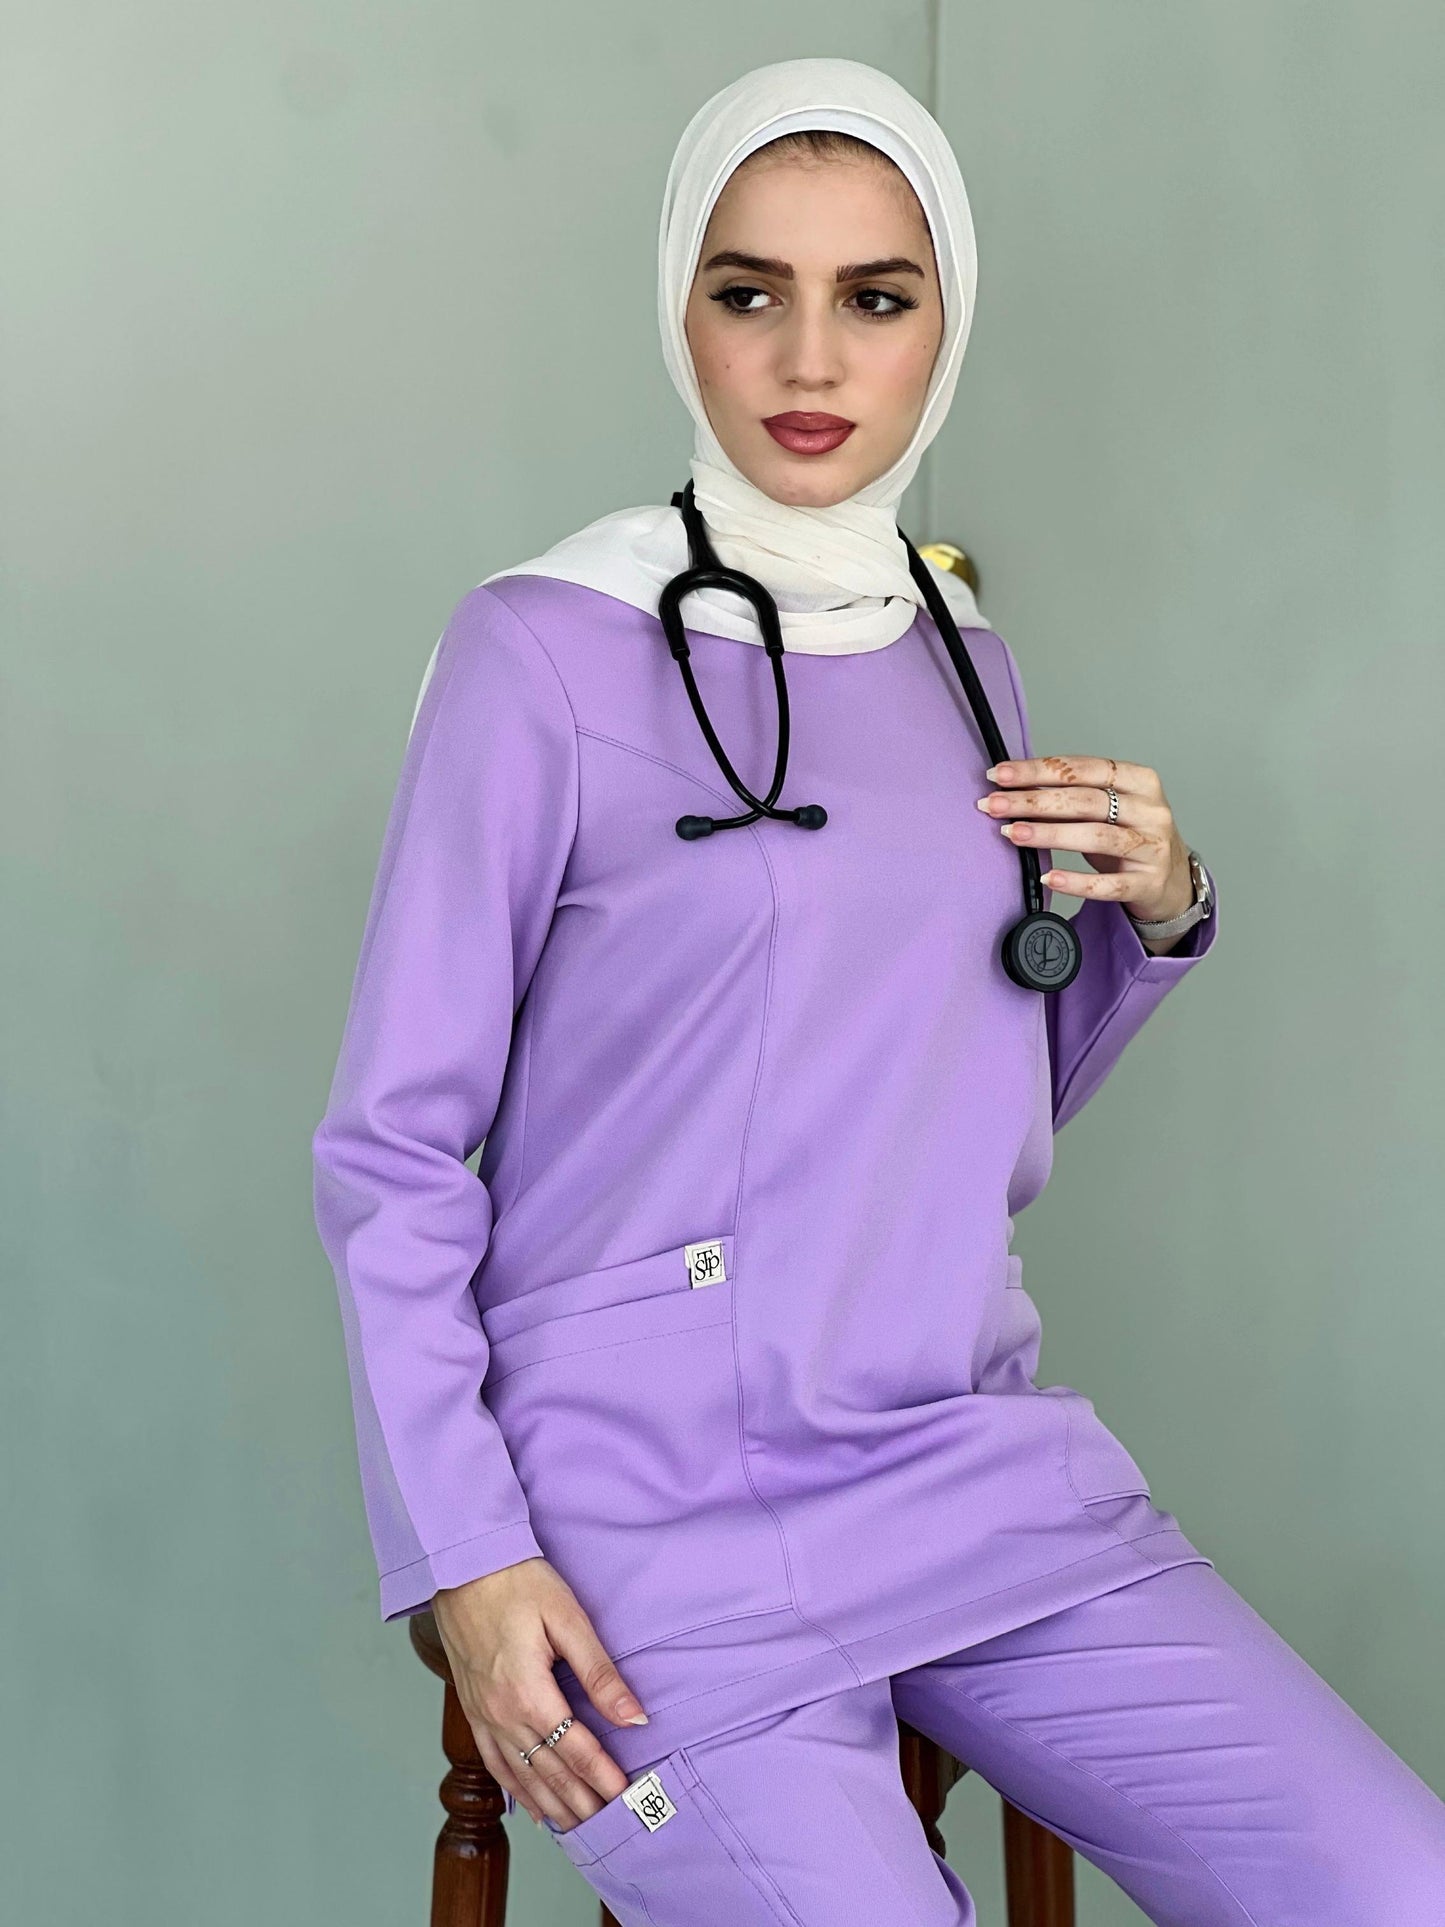 Lavender long sleeves scrubs